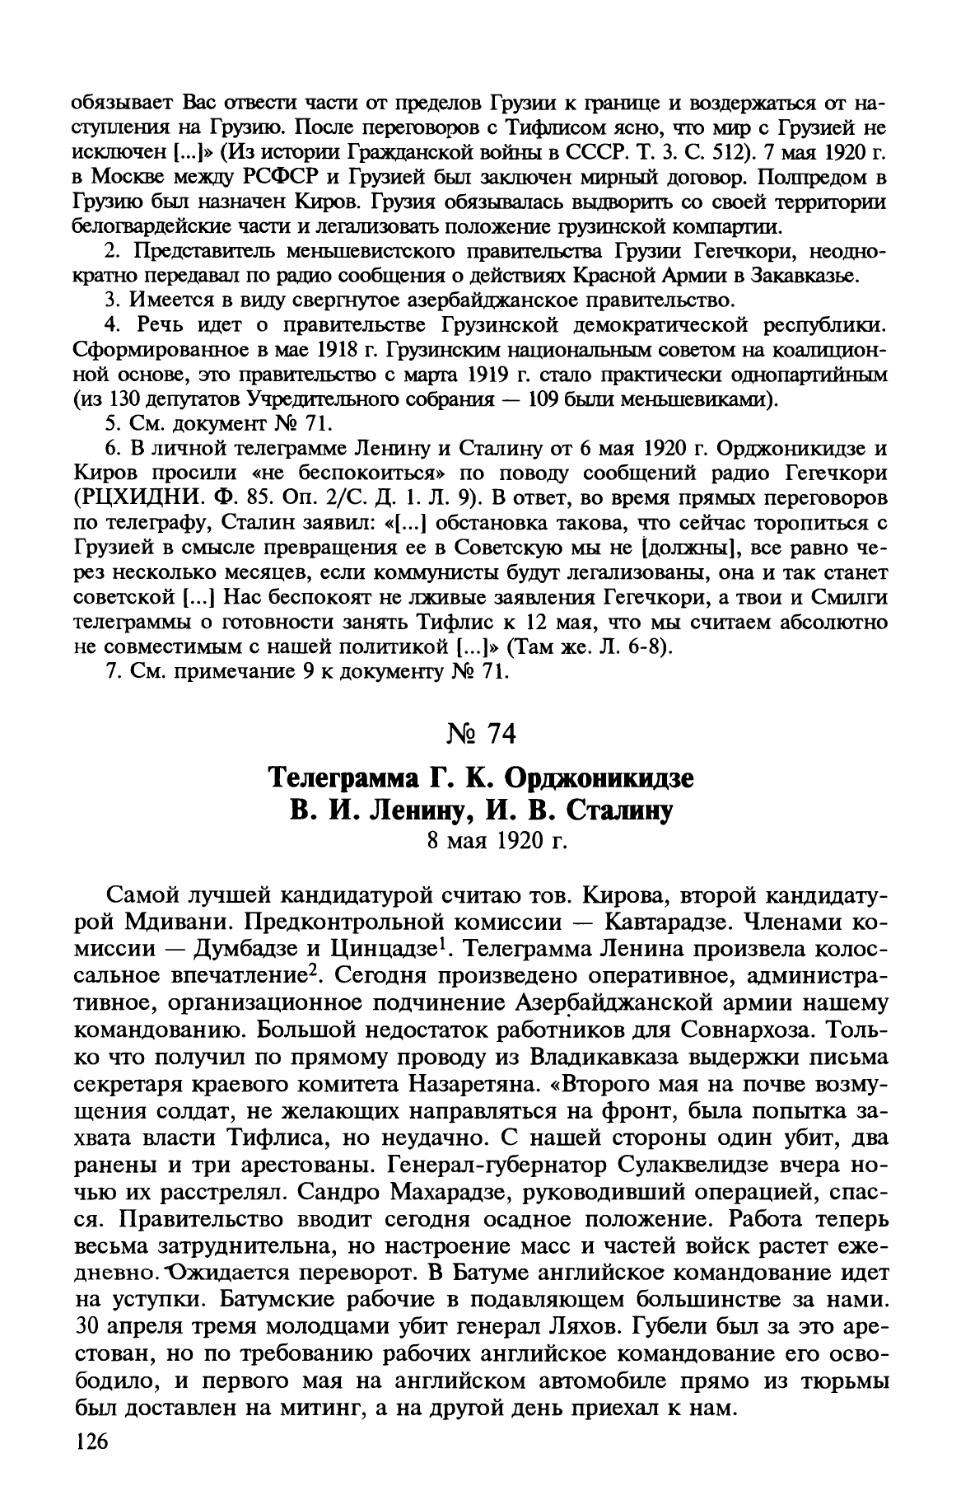 74. Телеграмма Г. К. Орджоникидзе В. И. Ленину, И. В. Сталину. 8 мая 1920 г.